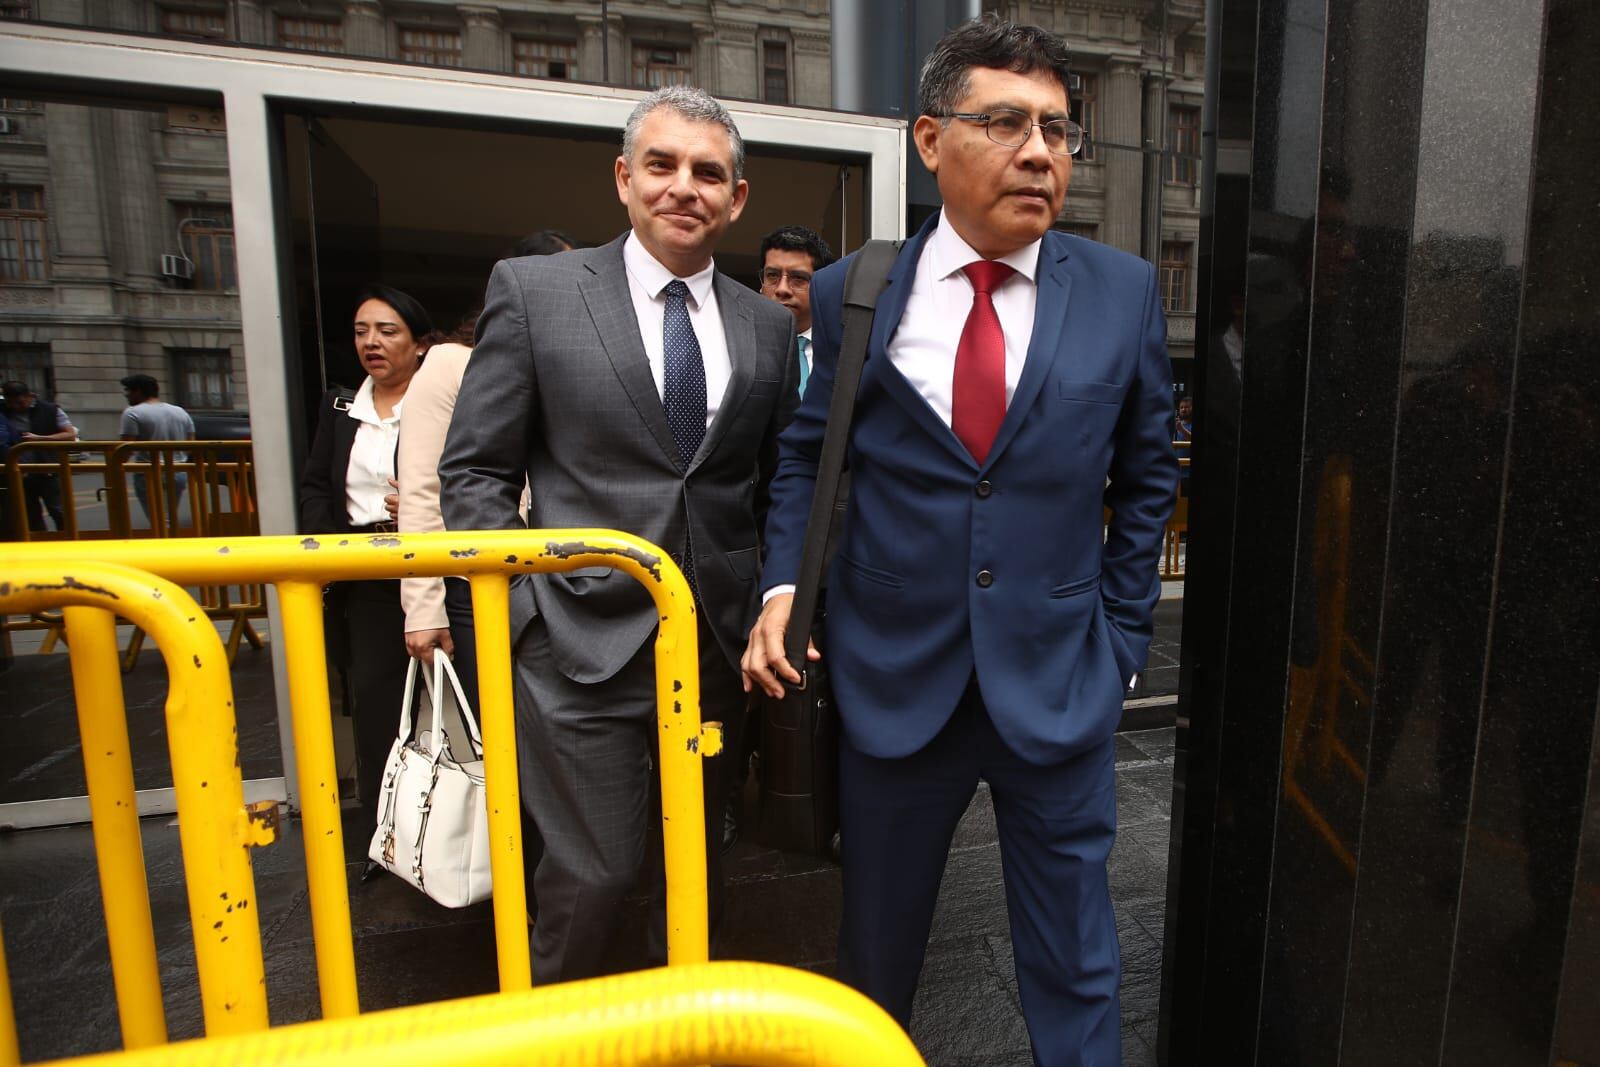 El fiscal Germán Juárez representará al Ministerio Público en el juicio. Foto: GEC / Jorge Cerdán